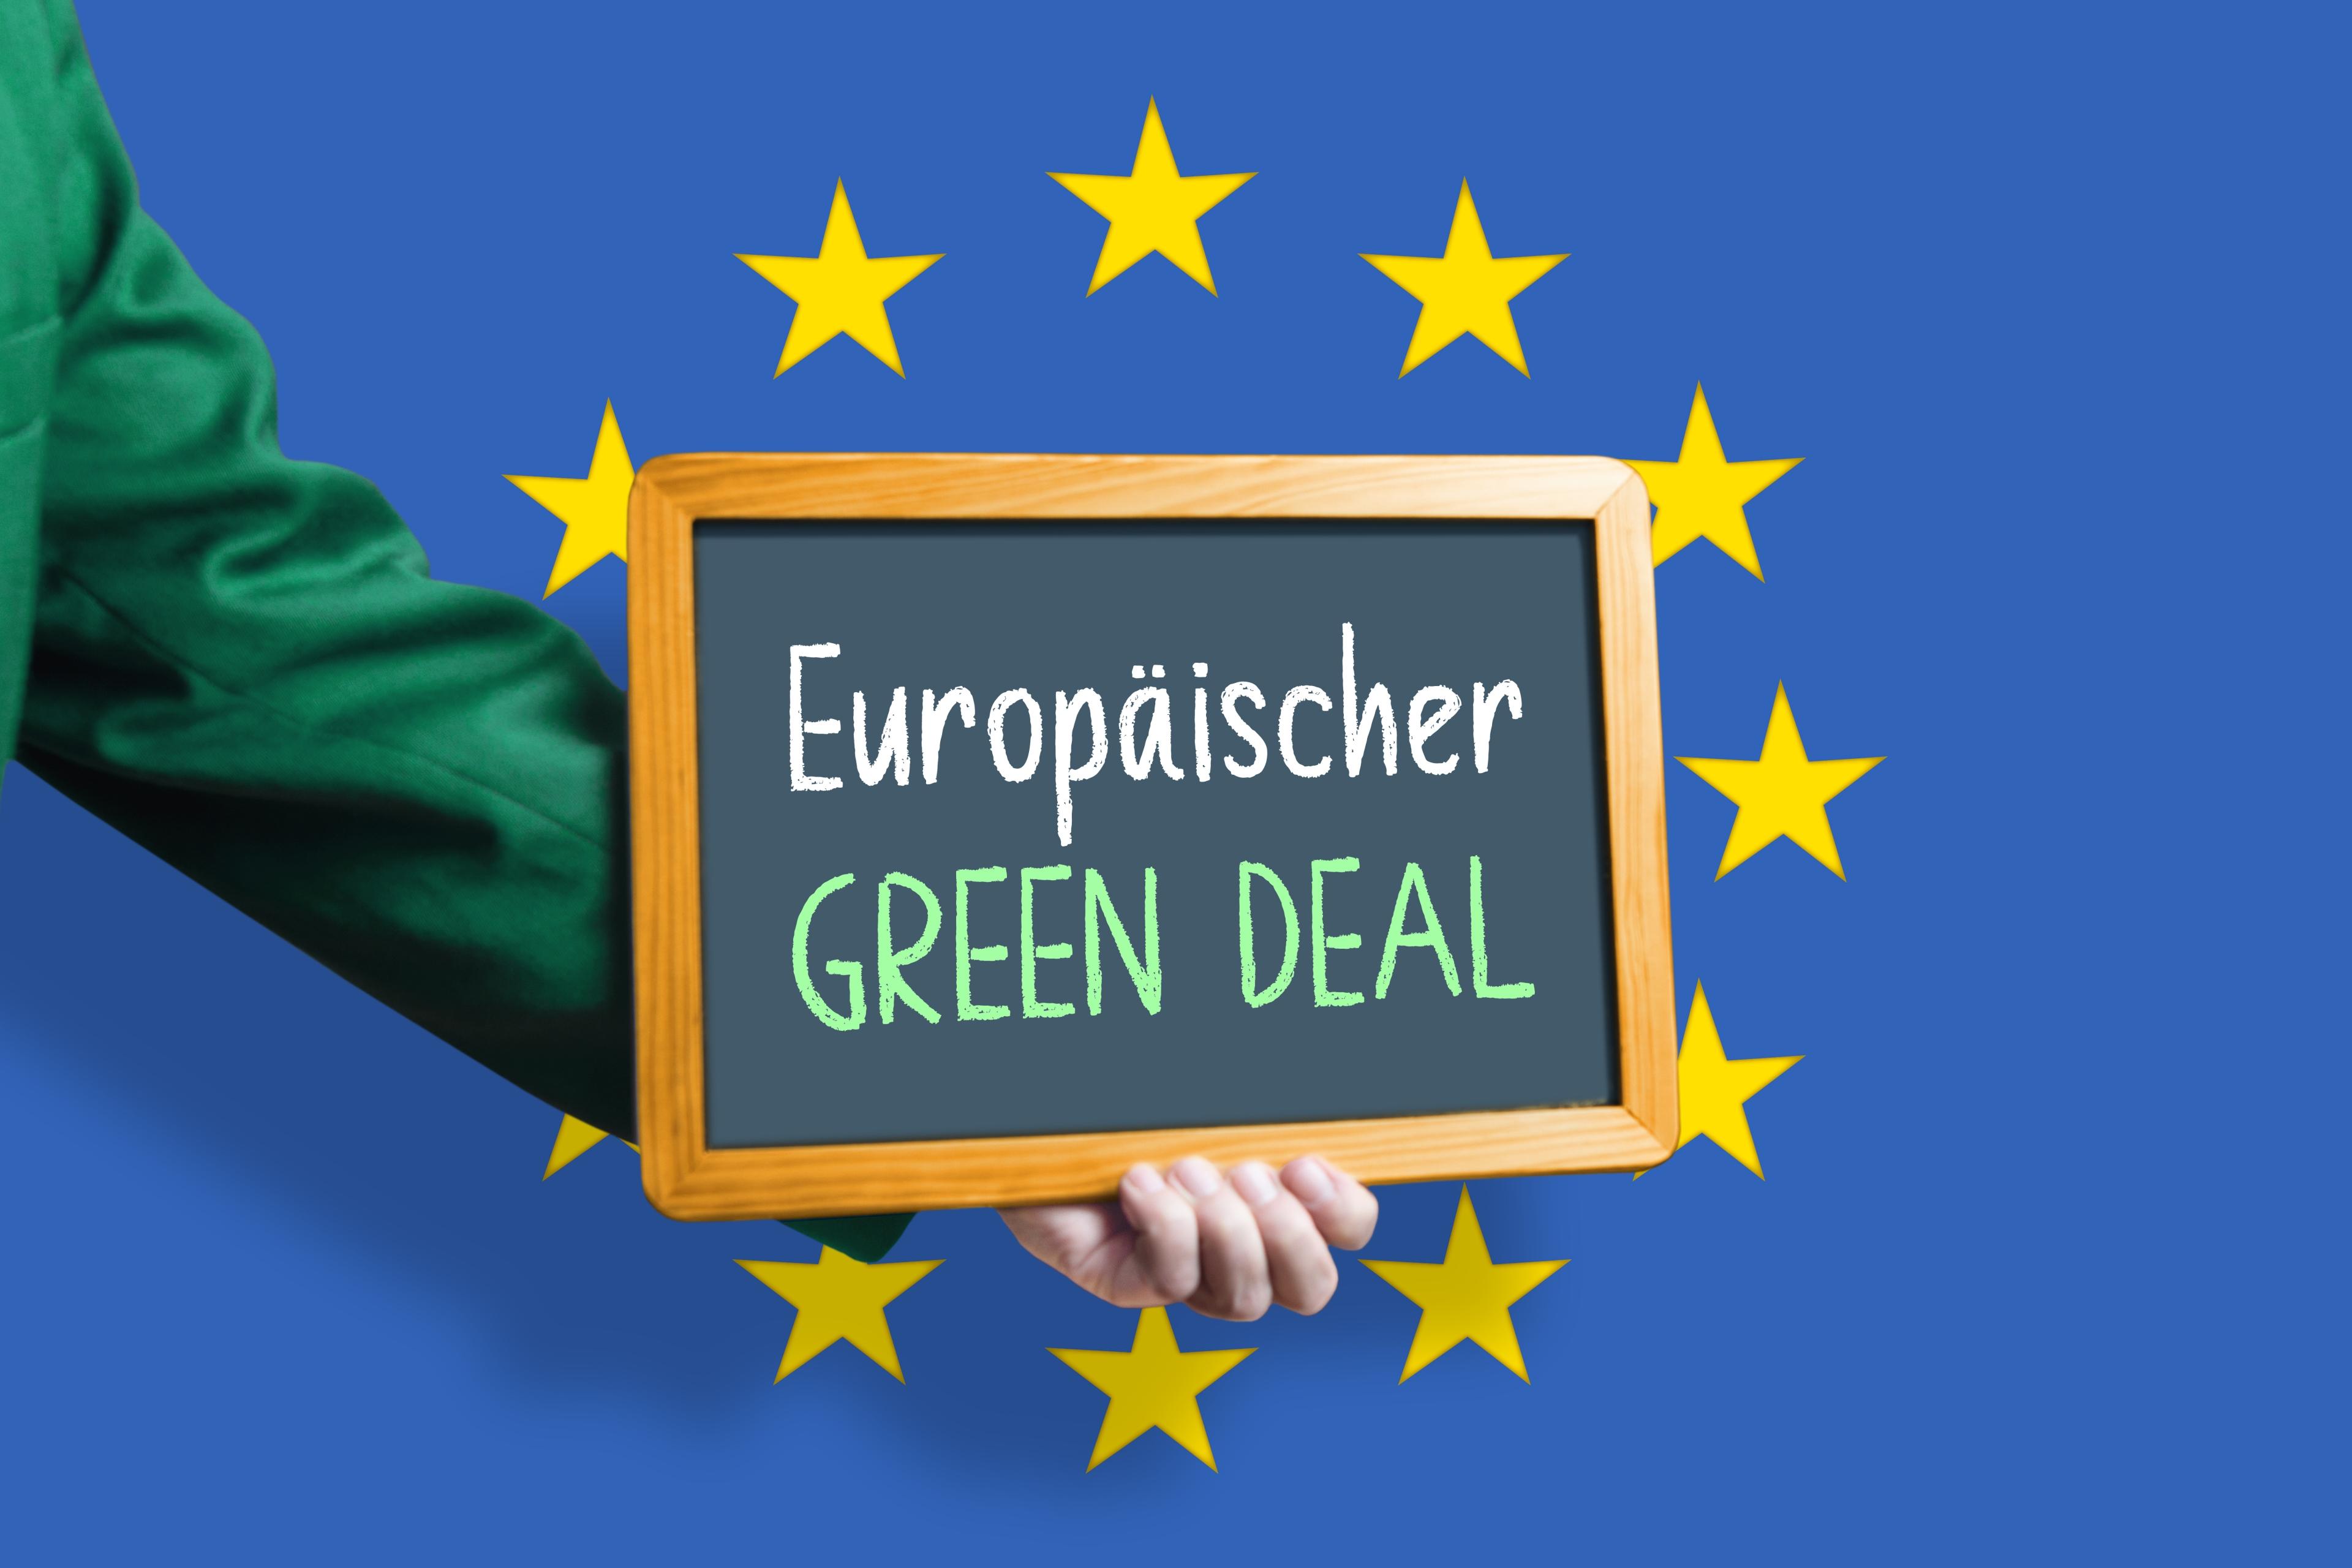 Ein grün bekleideter Arm hält eine Tafel mit Aufschrift "Europäischer Green Deal!" in den EU-Sternenkreis vor blaubem Hintergrund